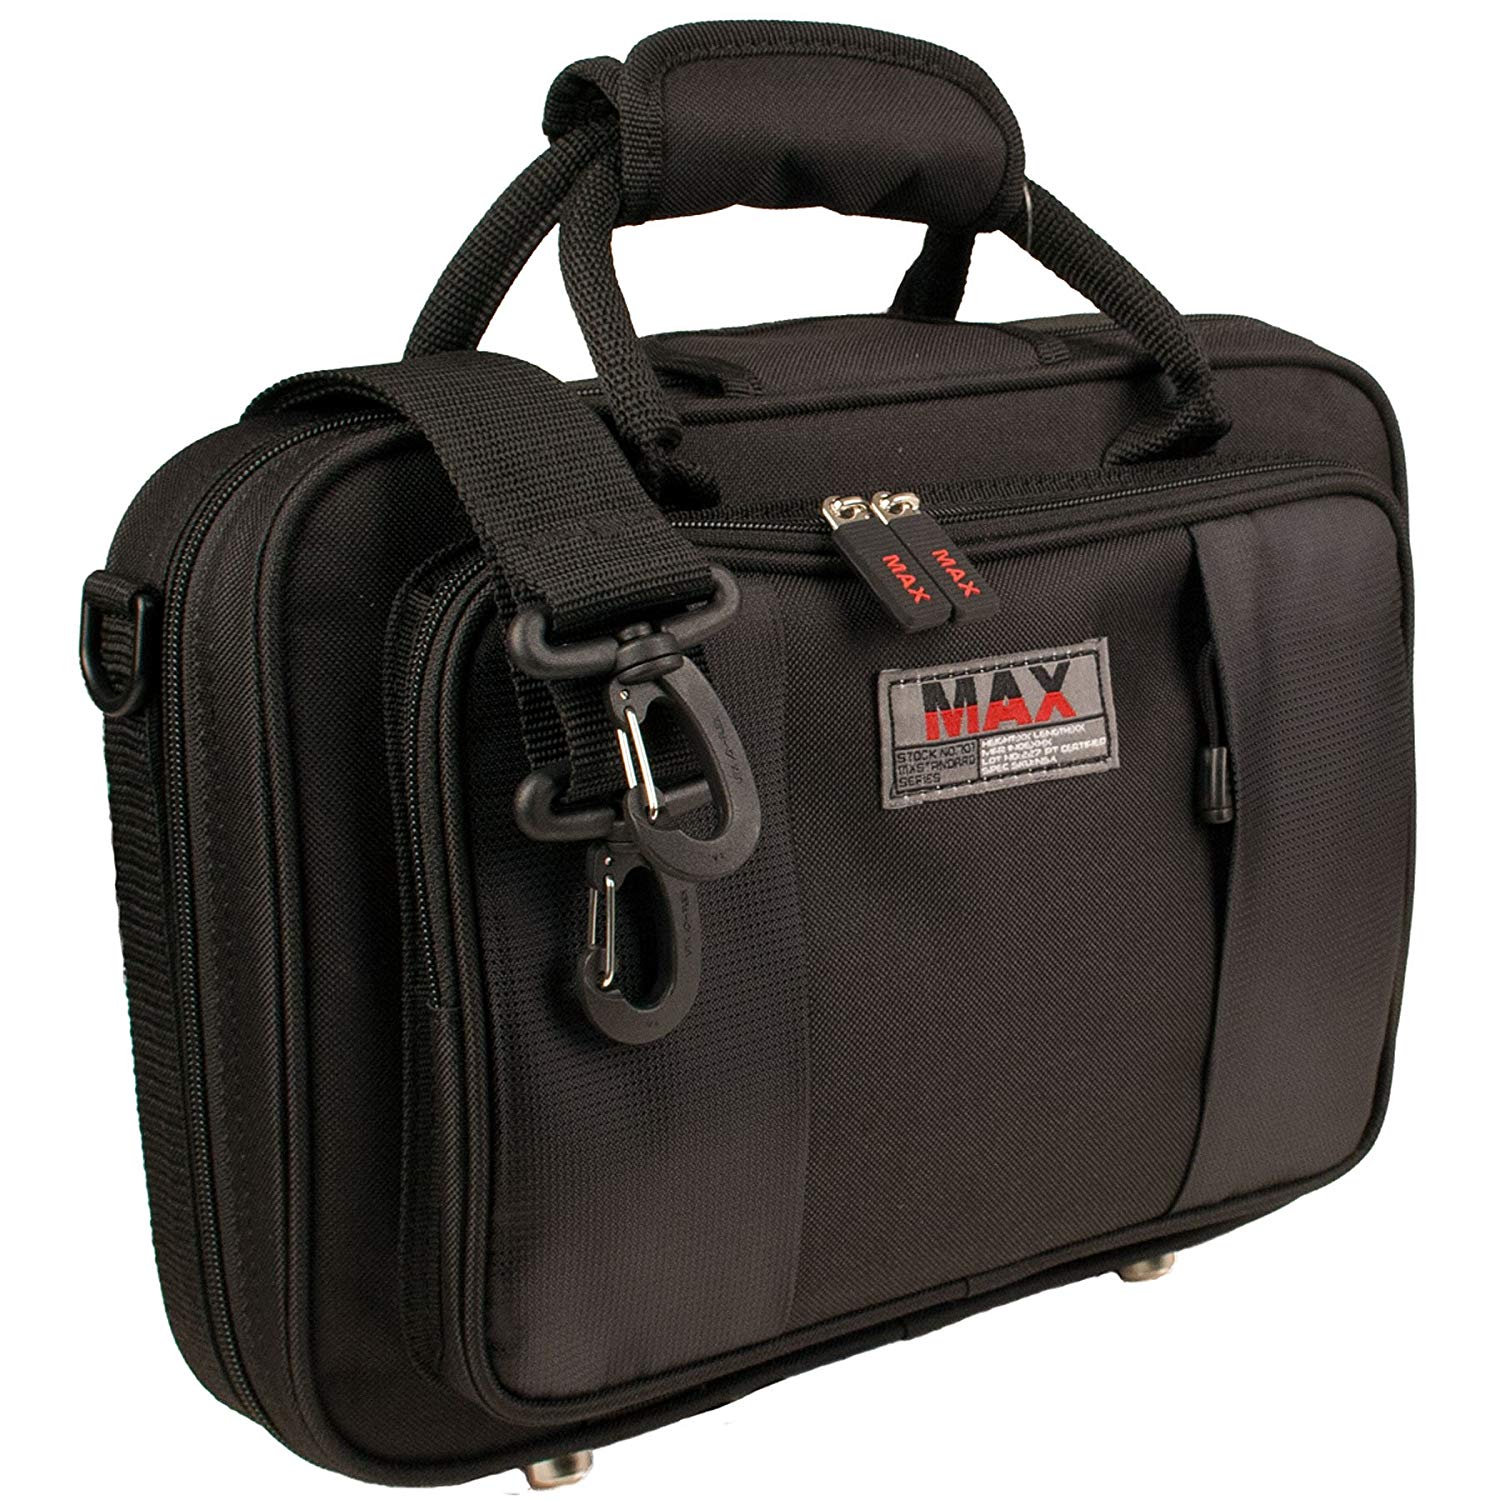 Protec MX315 Max Oboe Case (Black)